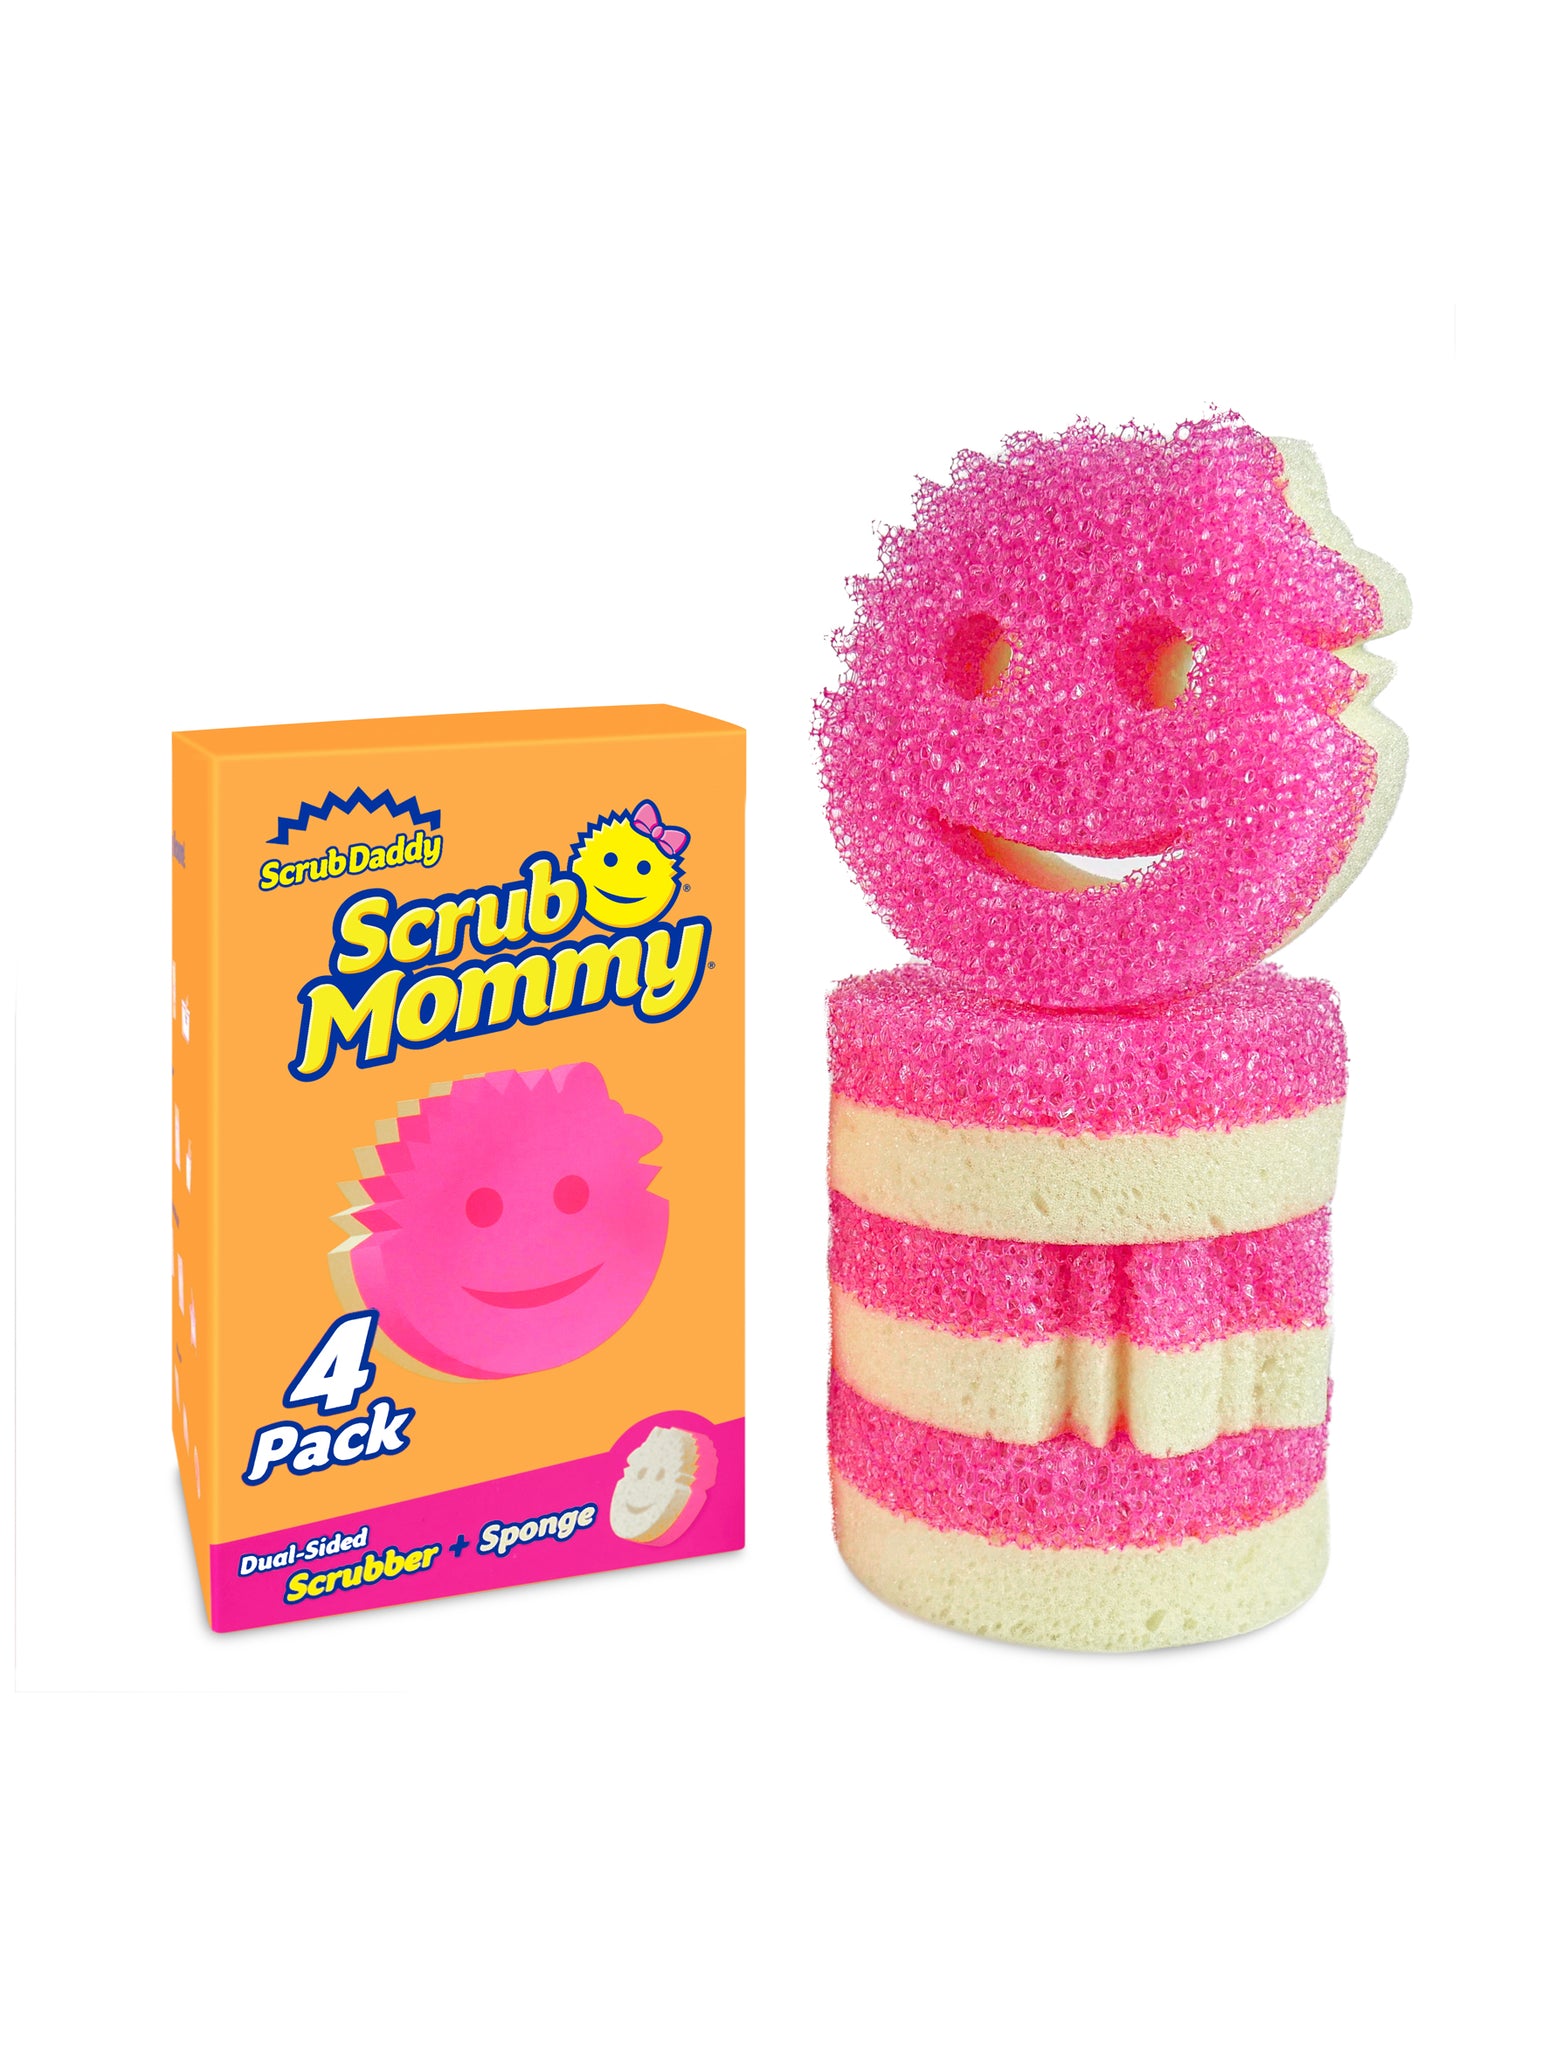 L'Original Scrub Daddy & Scrub Mommy – The Pink Stuff